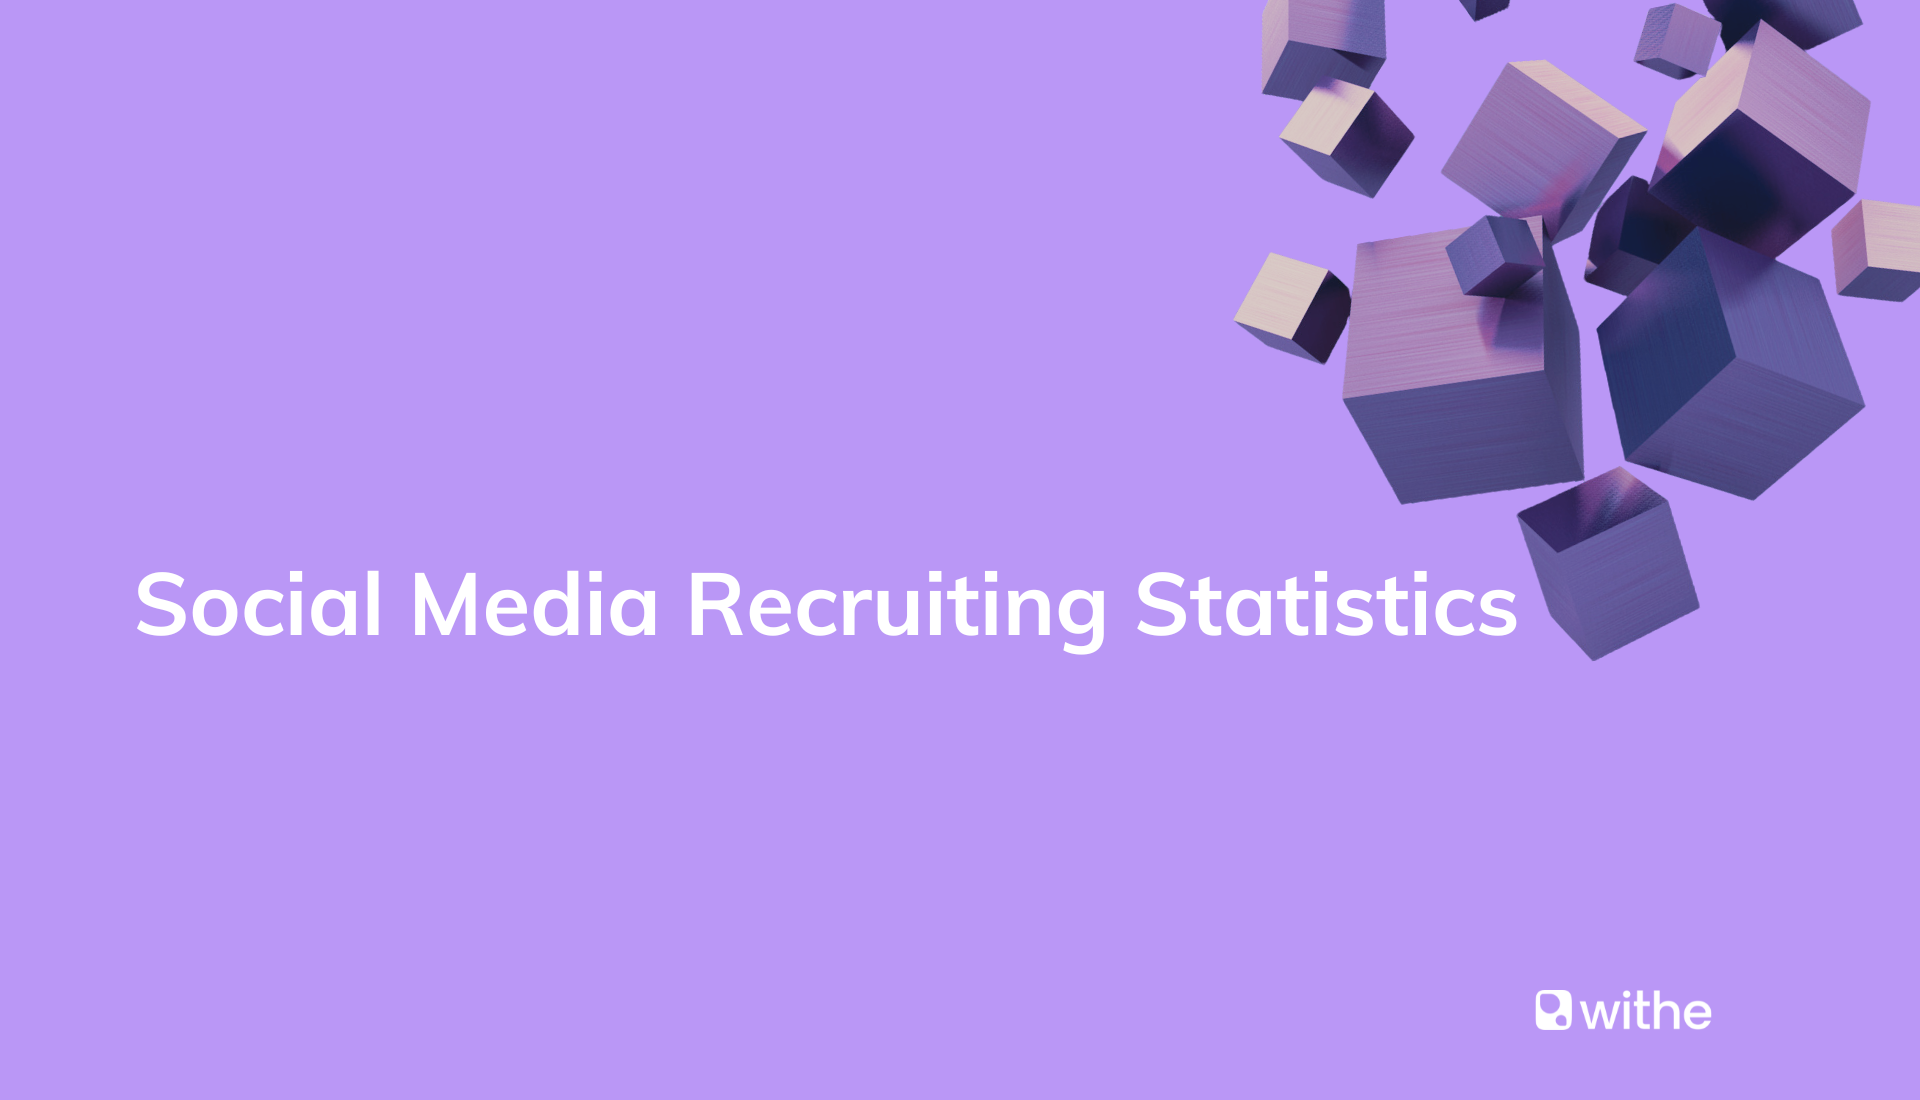 Social media recruitment statistics report